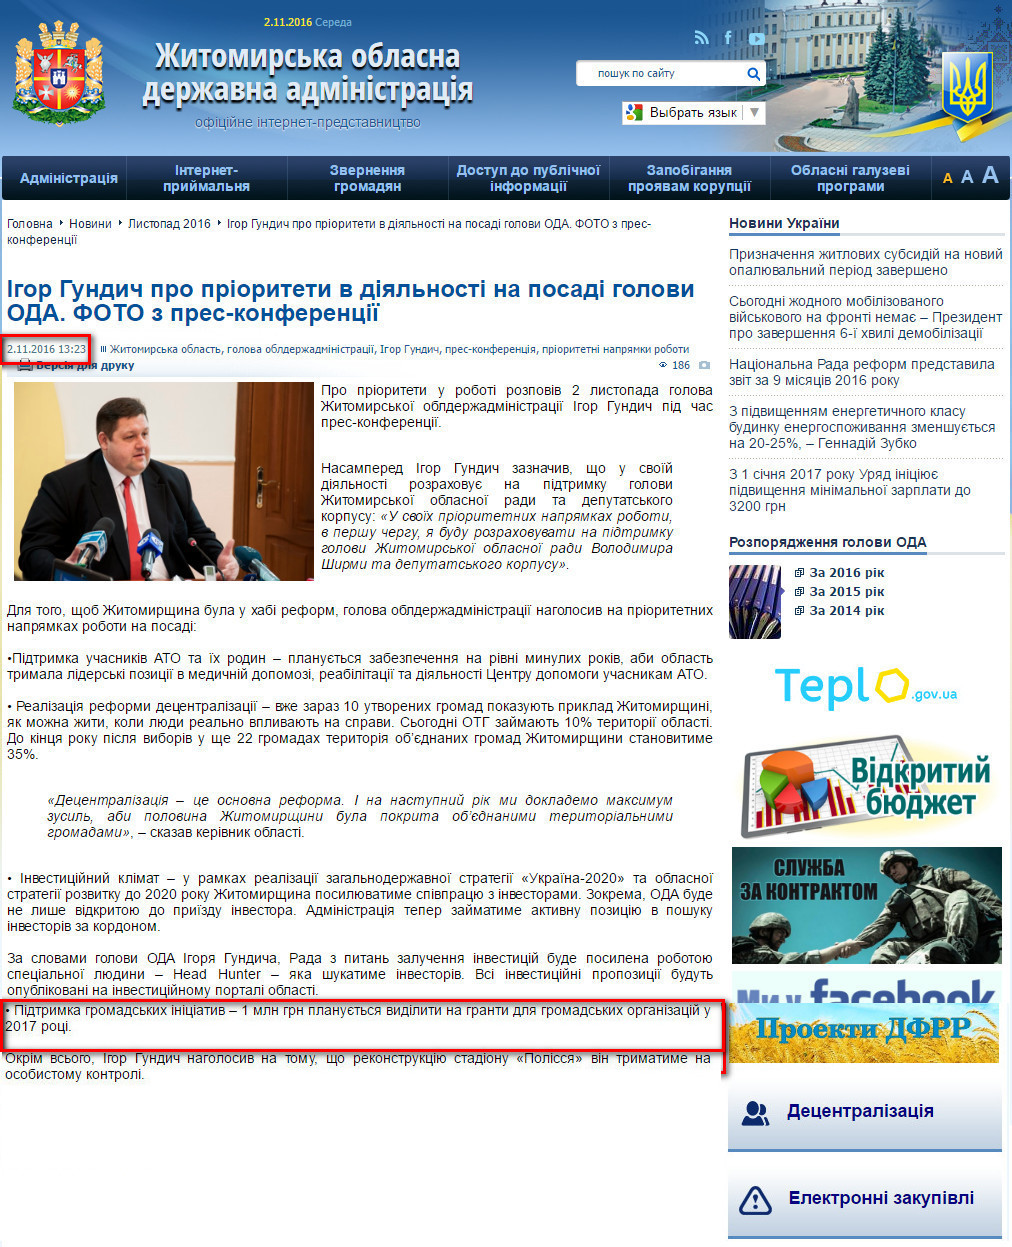 http://oda.zt.gov.ua/igor-gundich-pro-prioriteti-v-diyalnosti-na-posadi-golovi-oda.-foto-z-pres-konferenczii.html